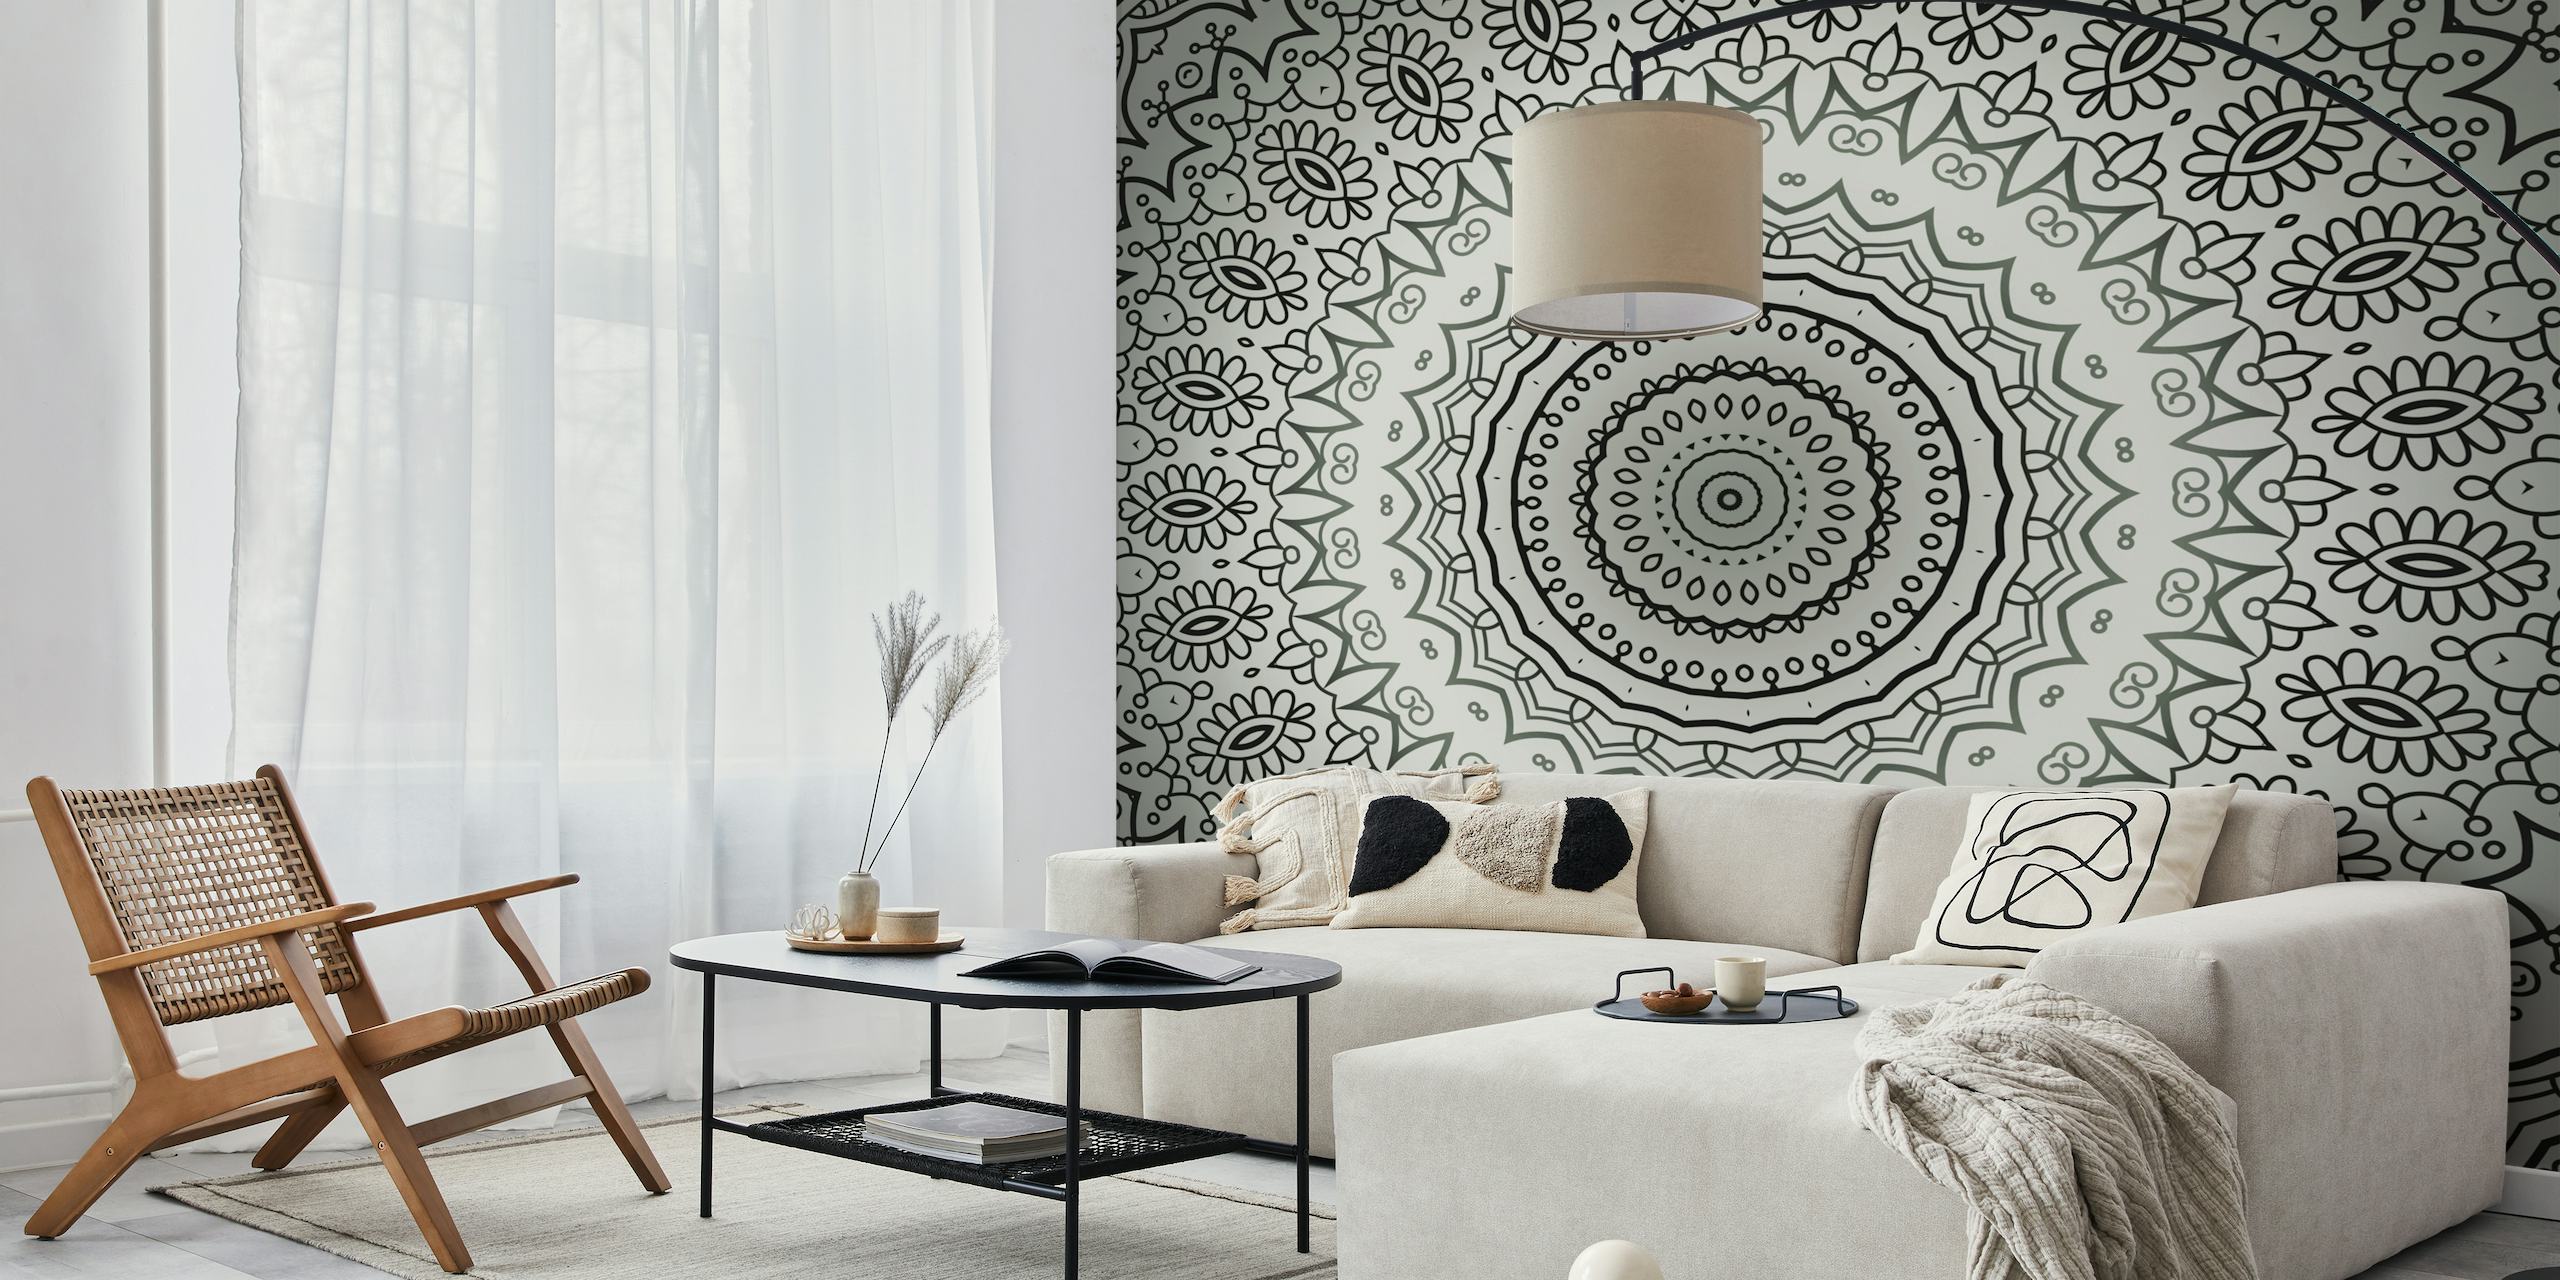 Tyylikäs harmaasävyinen mandala-seinämaalaus monimutkaisilla kuvioilla